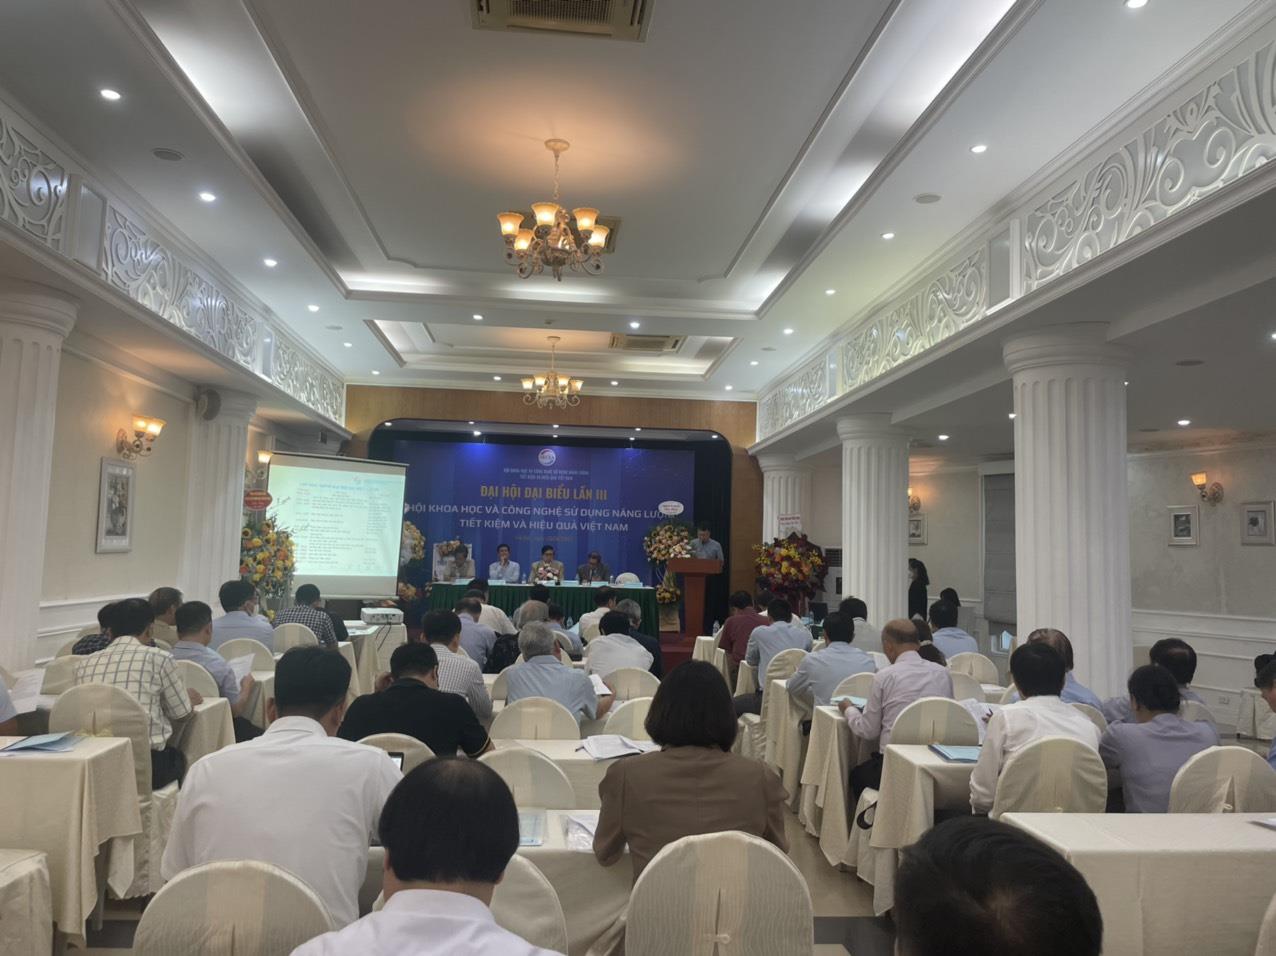 Đại hội Đại biểu Hội Khoa học và Công nghệ sử dụng năng lượng Tiết kiệm và hiệu quả Việt Nam lần thứ III, nhiệm kỳ 2022 - 2027